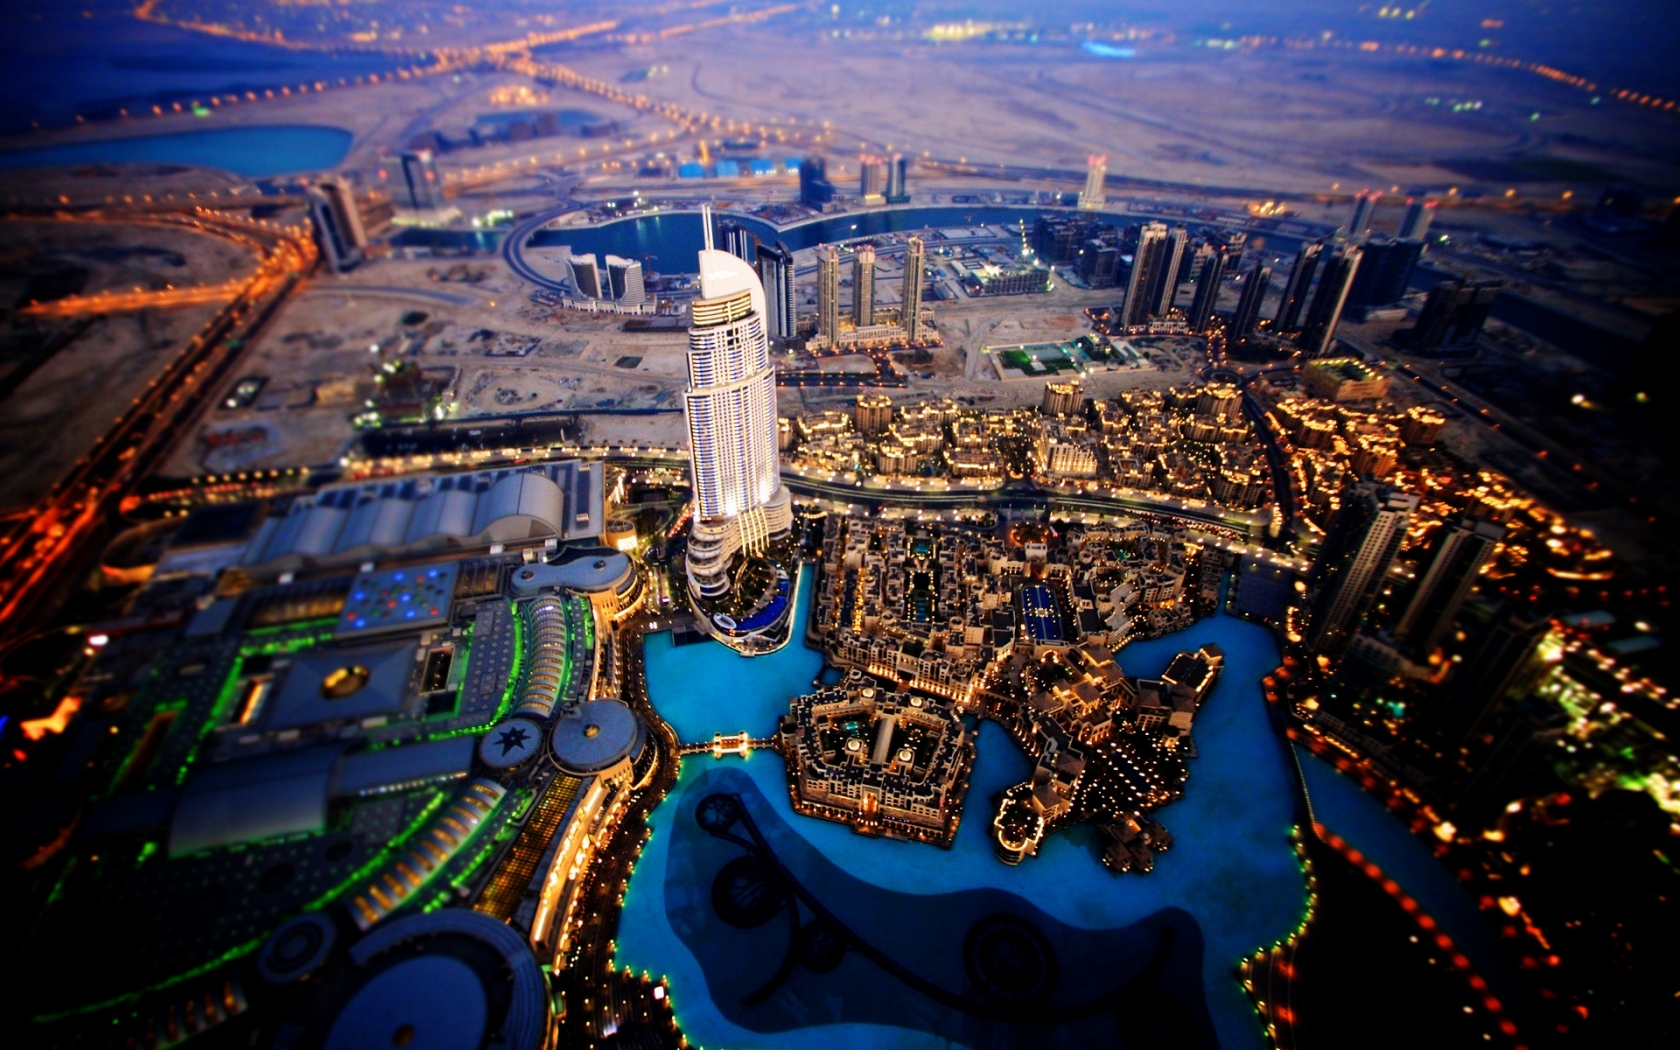 Dubai Sky View for 1680 x 1050 widescreen resolution